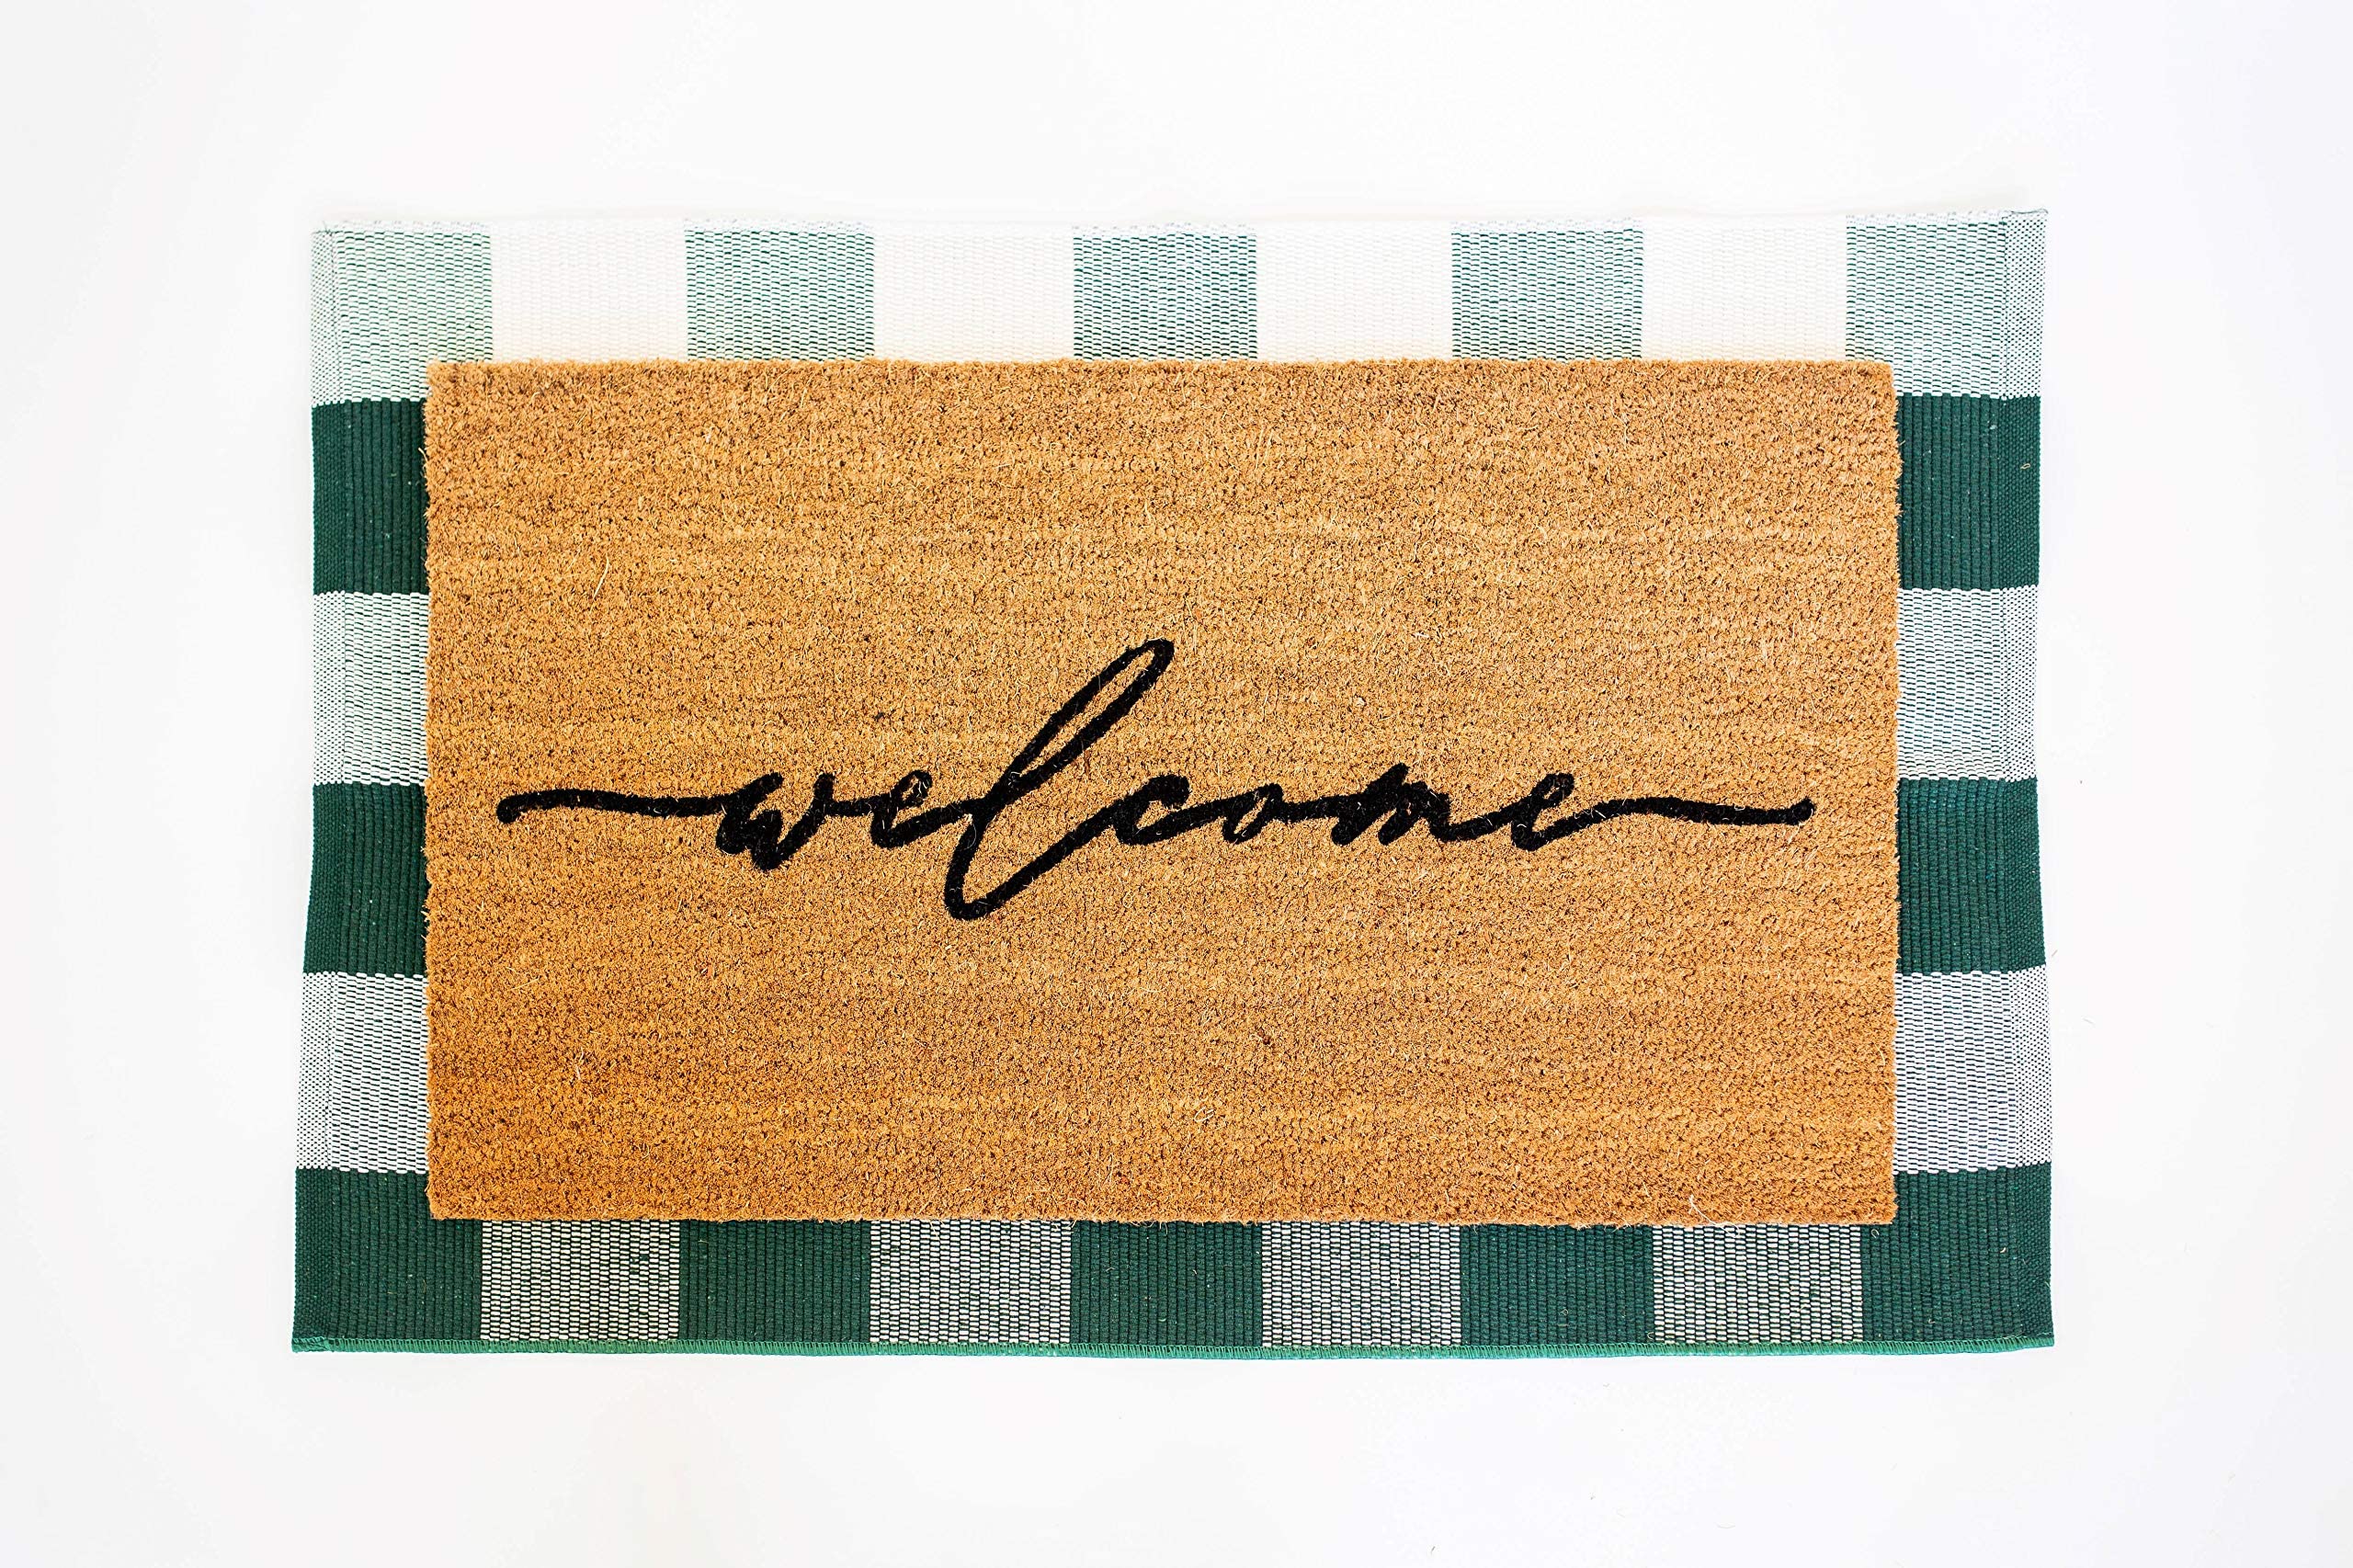 Welcome Door Mat – Jortle Rug House